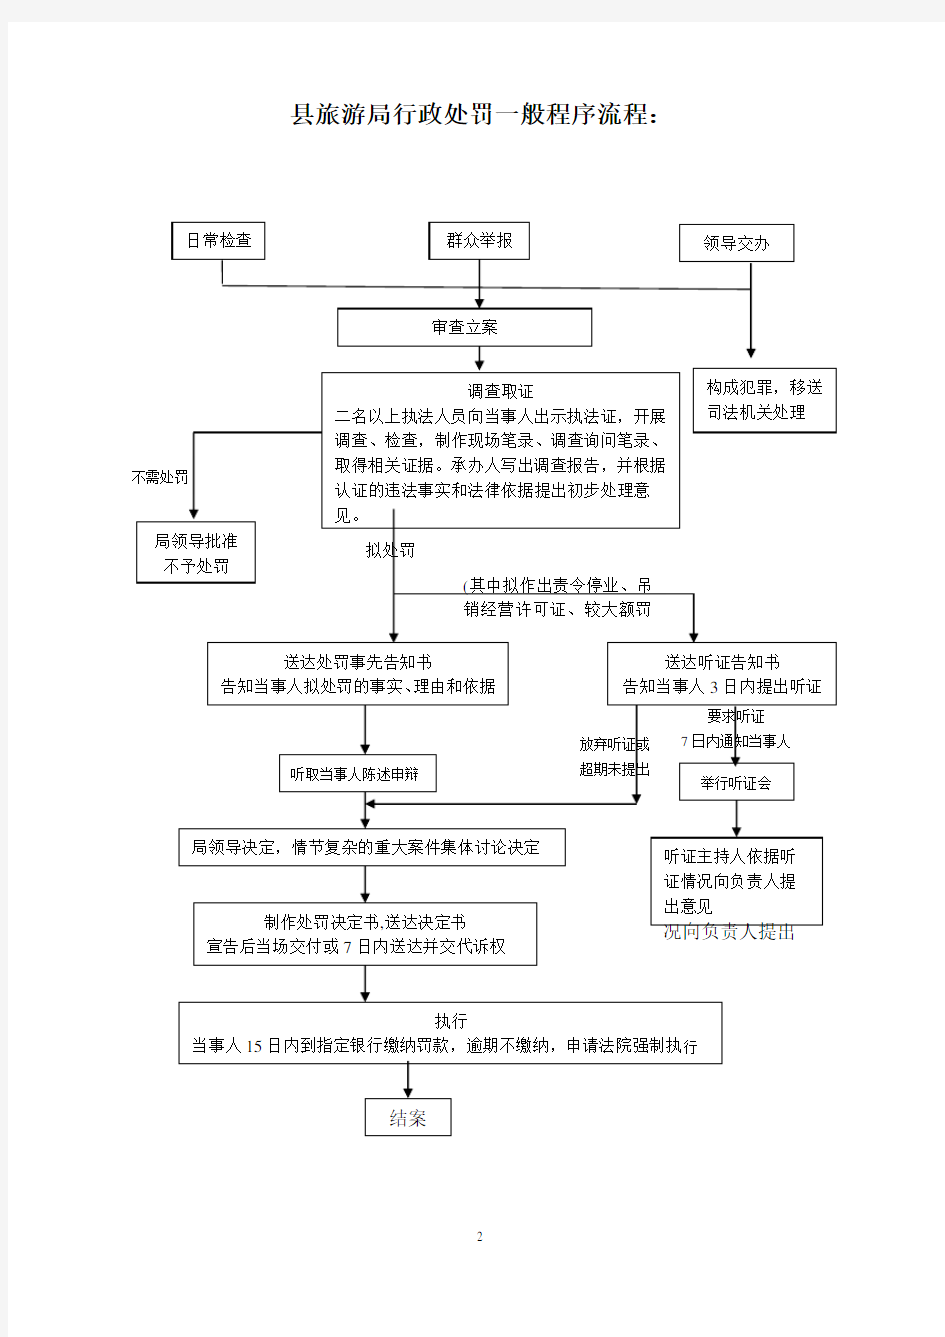 县旅游局行政职权运行流程图